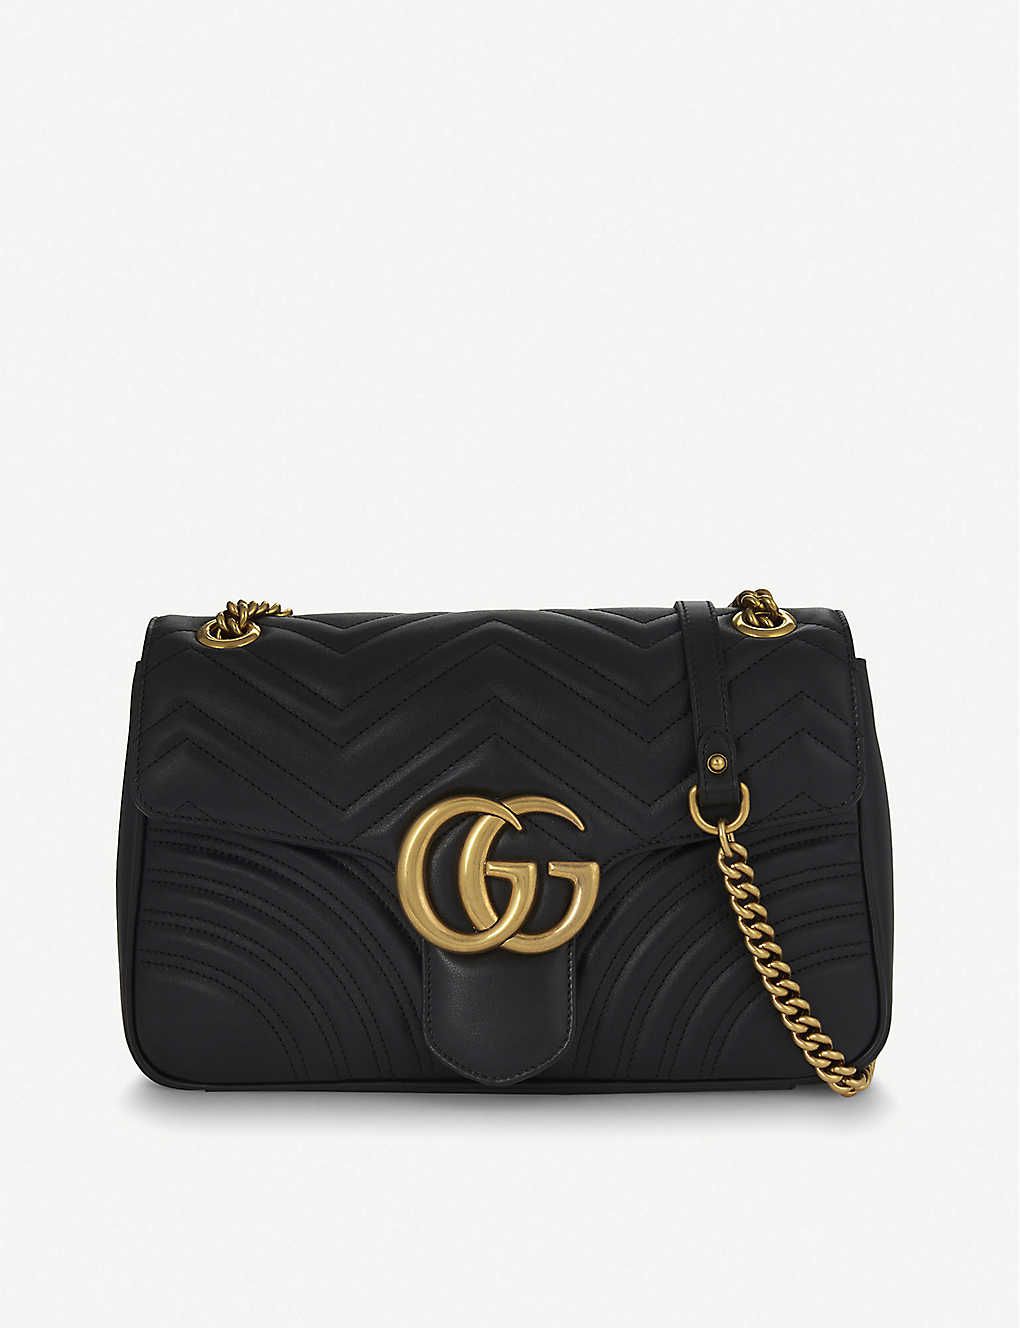 GG Marmont medium leather shoulder bag | Selfridges